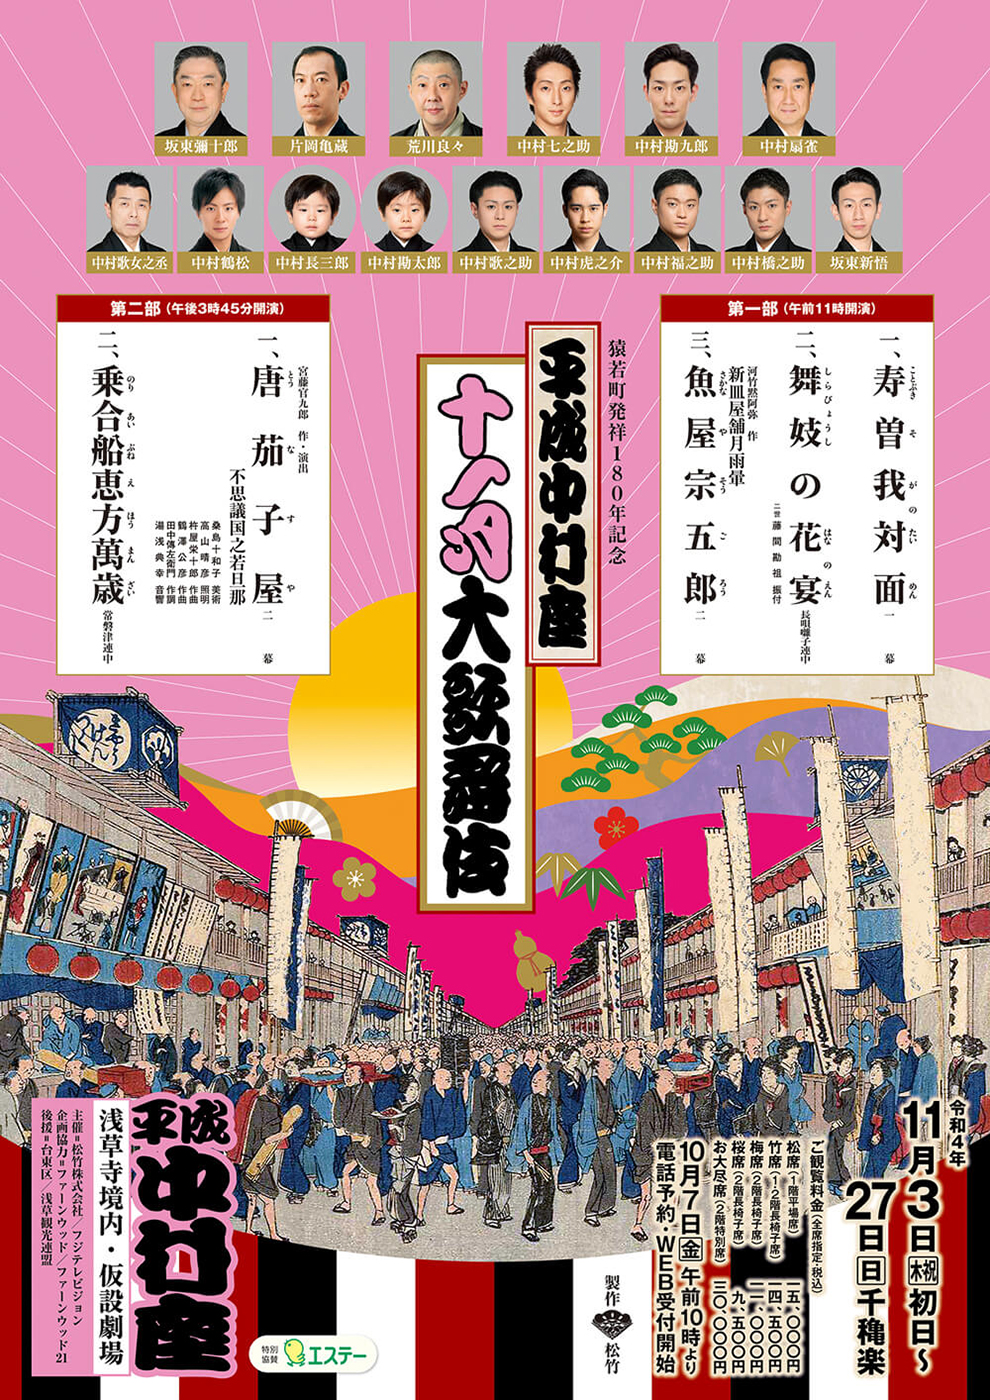 平成中村座十一月大歌舞伎 第一部『寿曽我対面』『魚屋宗五郎』